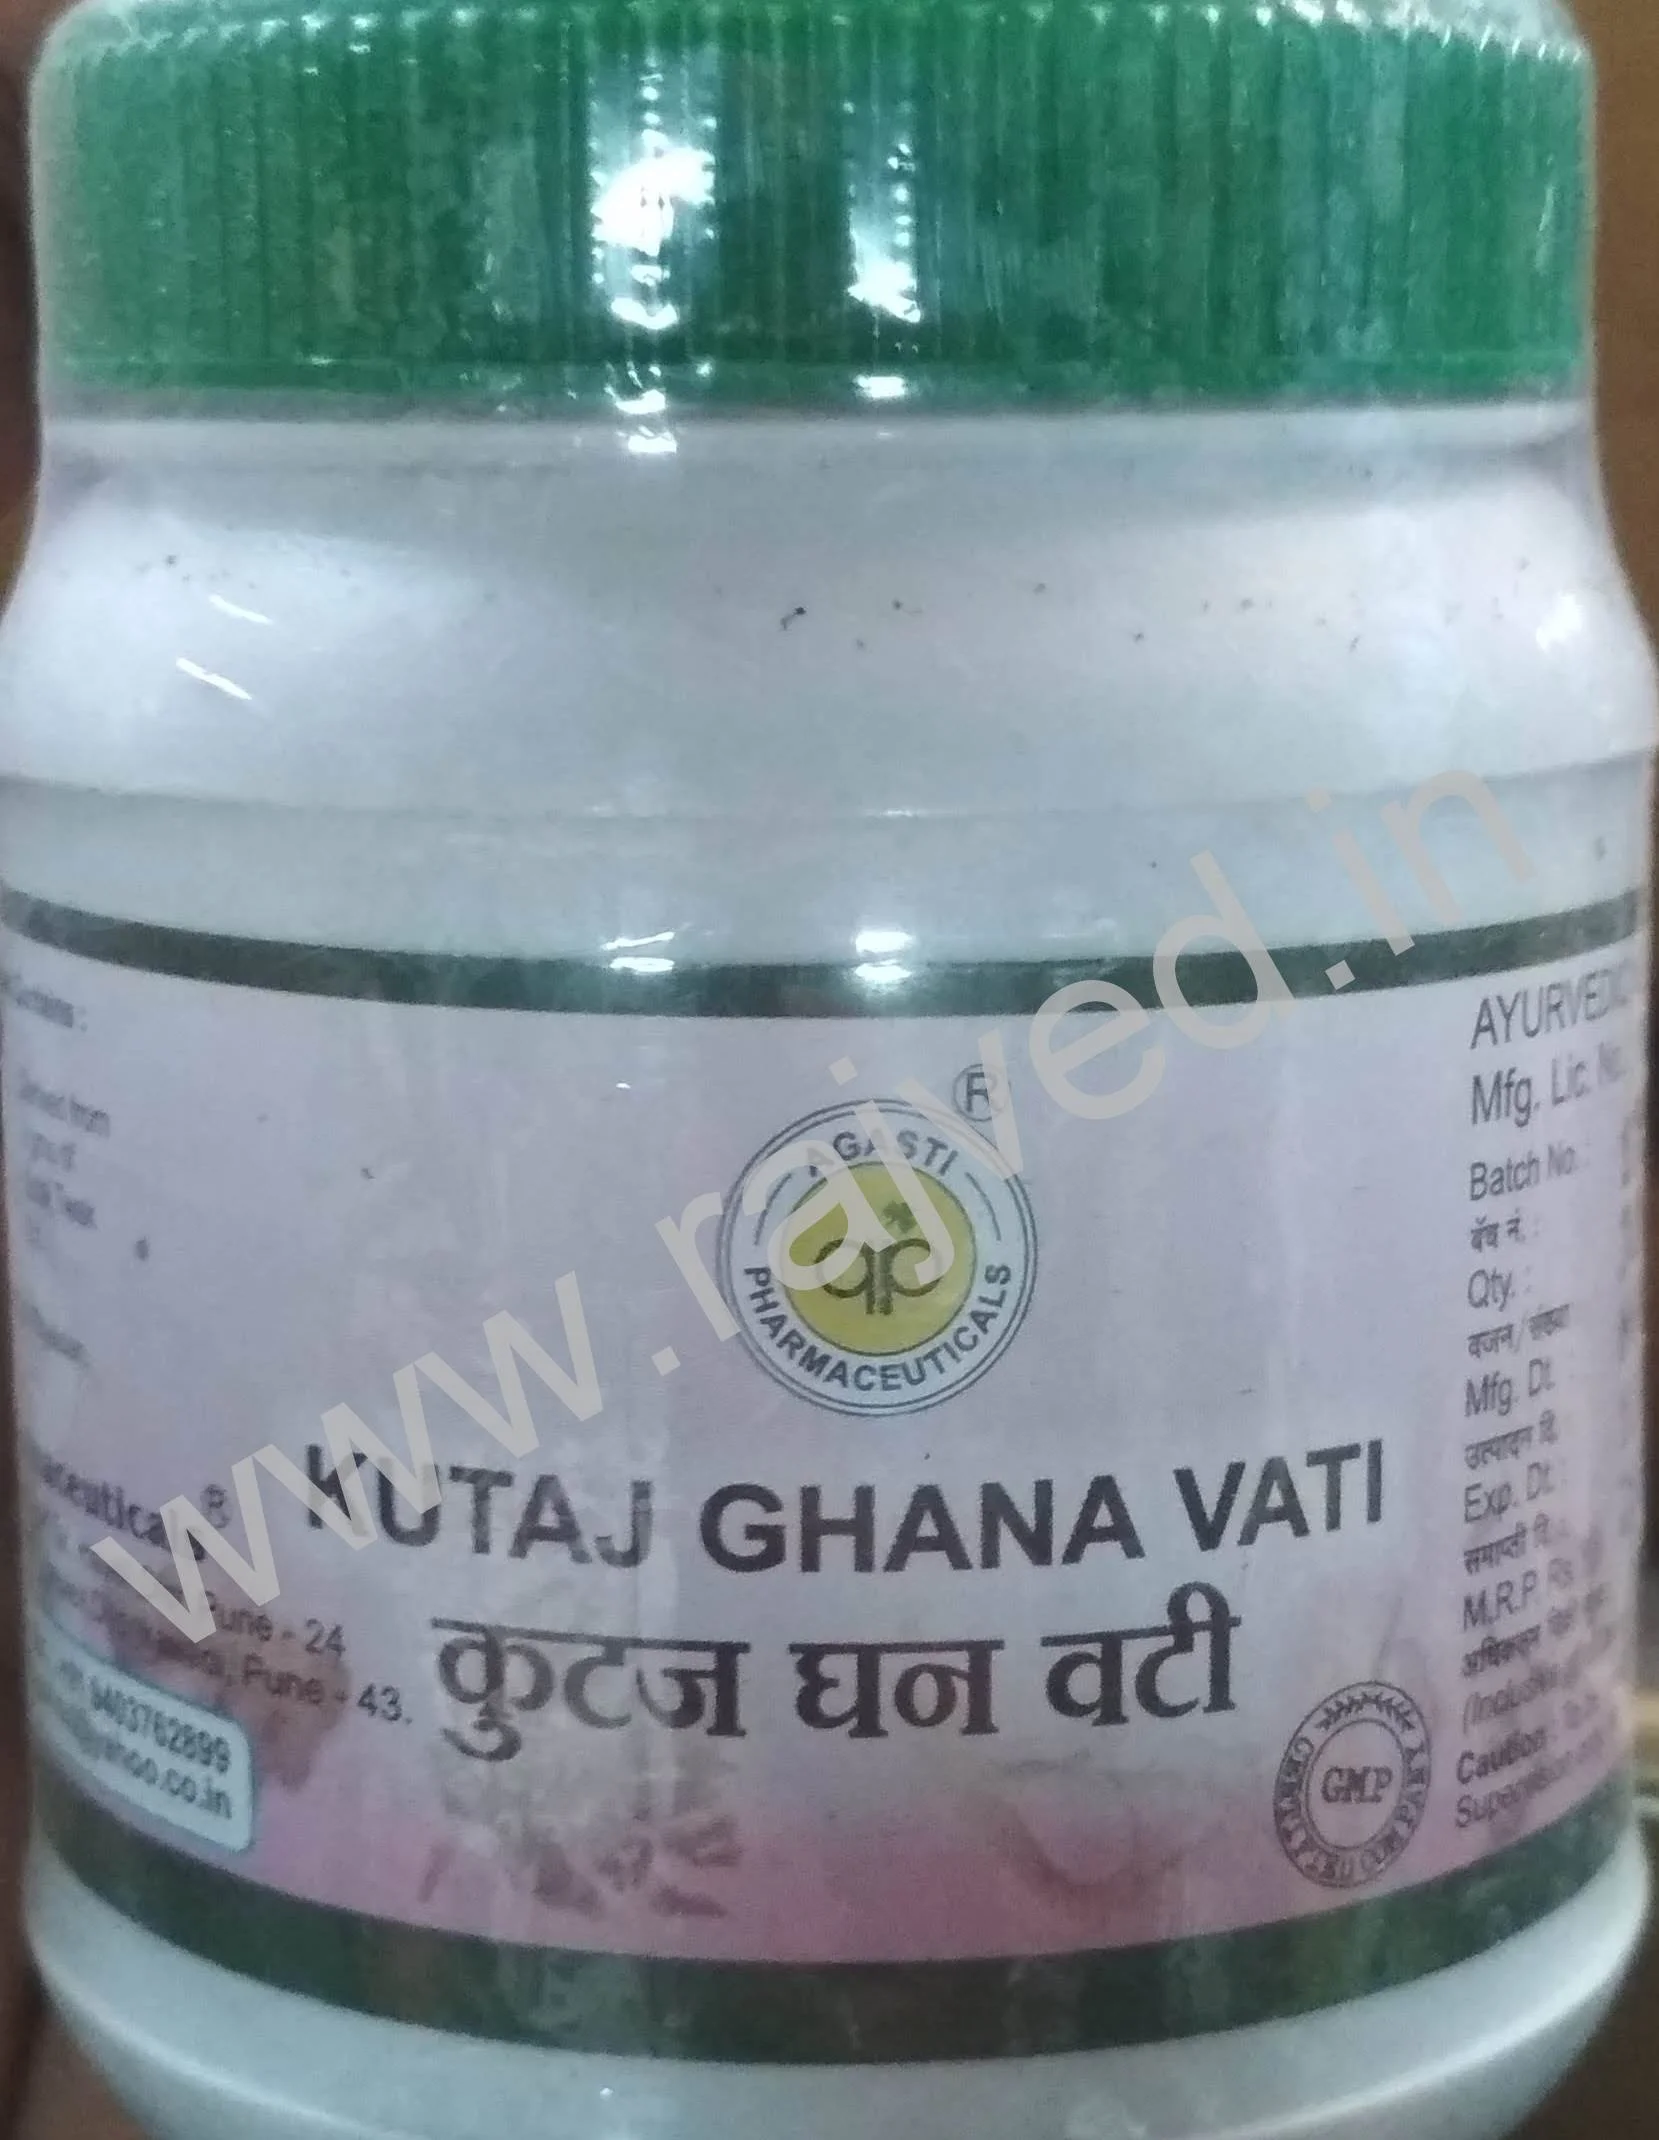 kutaj ghana vati 100 gm 400 tablet upto 15% off agasti pharmaceuticals